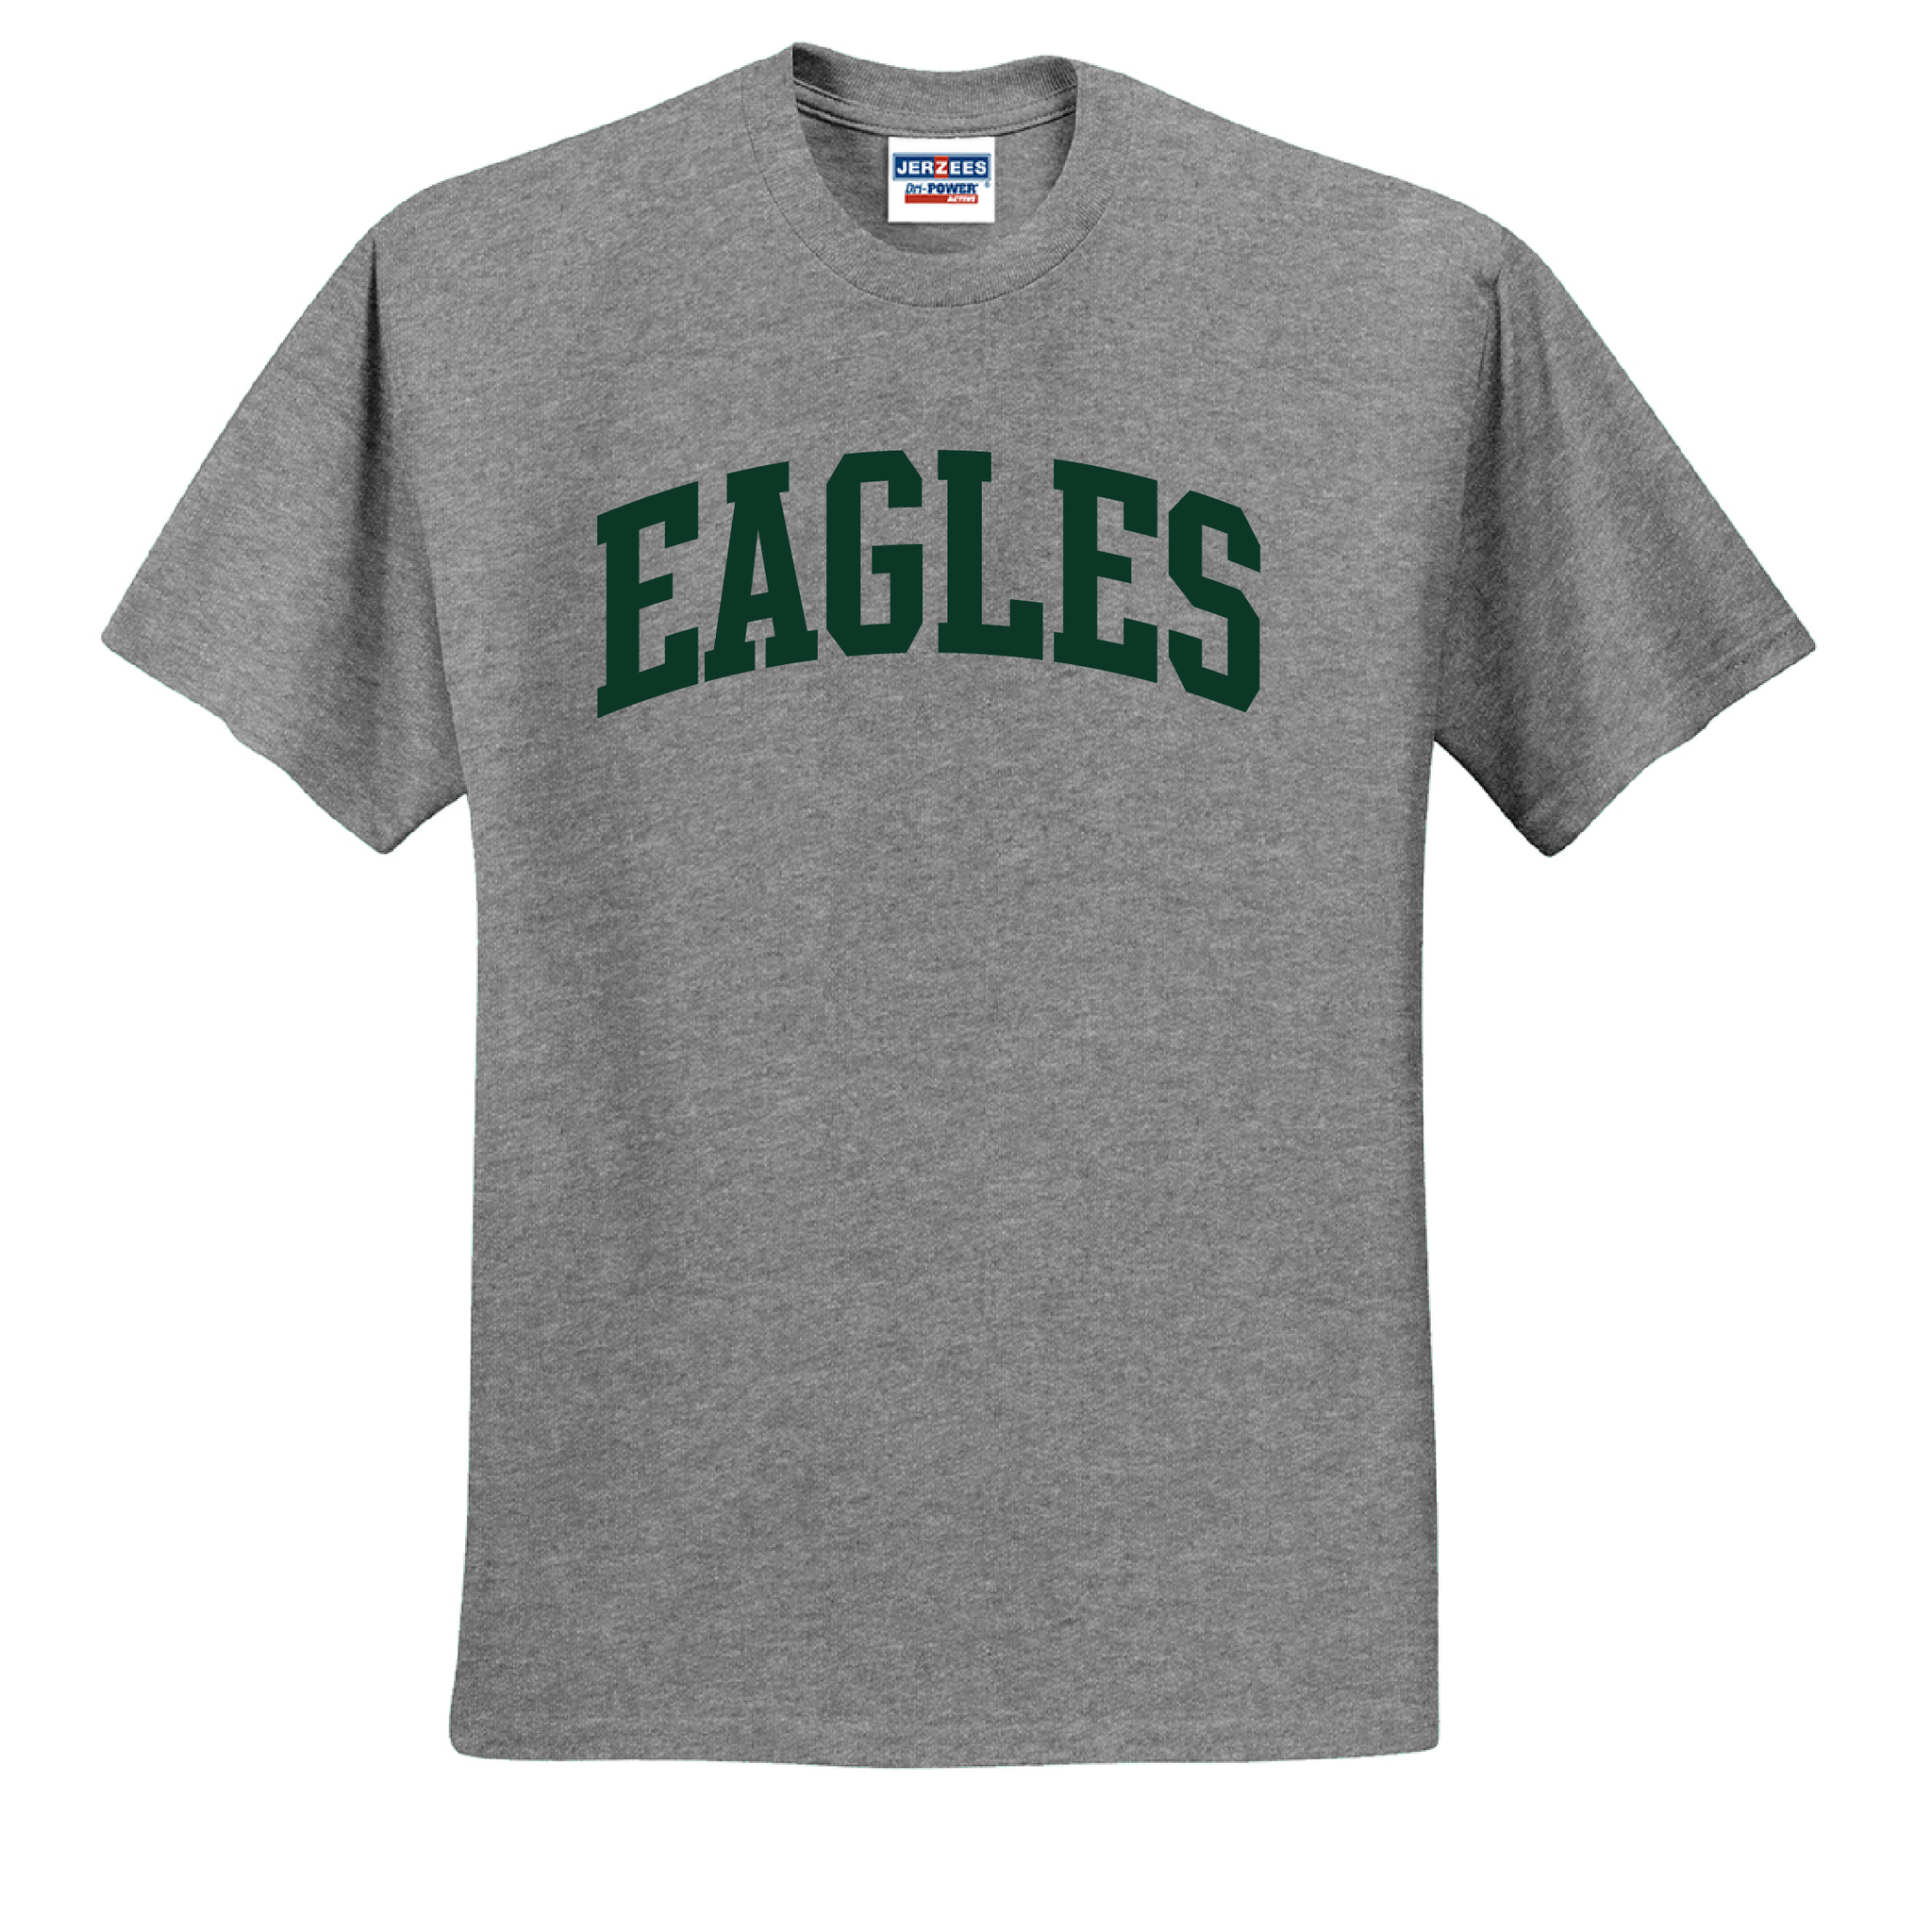 Chaminade Eagles Team T-Shirt